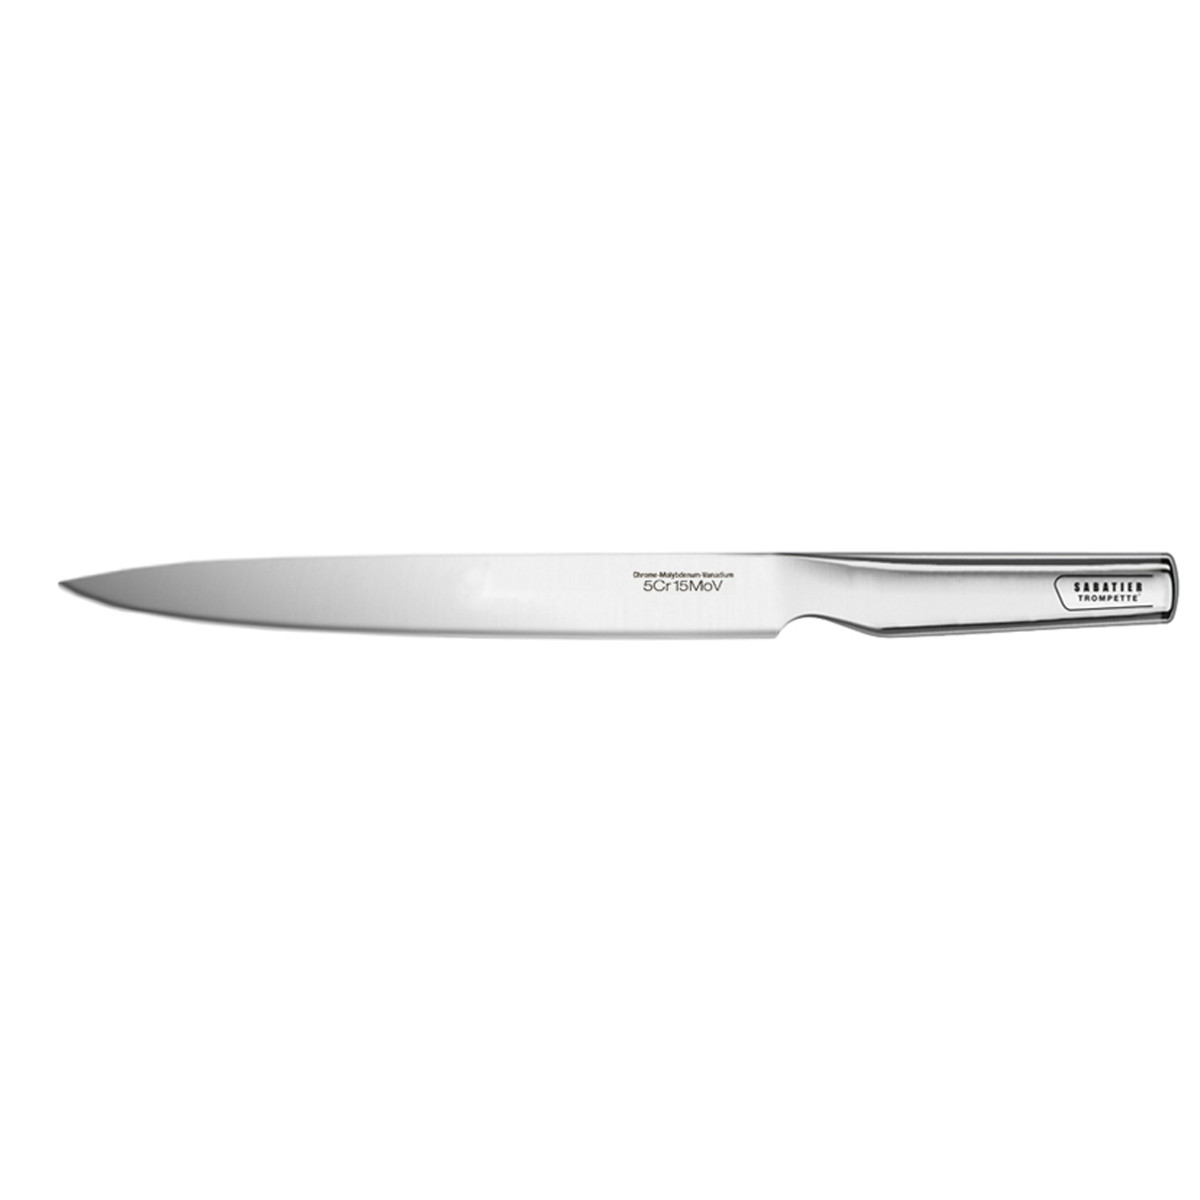 Couteau filet de sole flexible 18cm